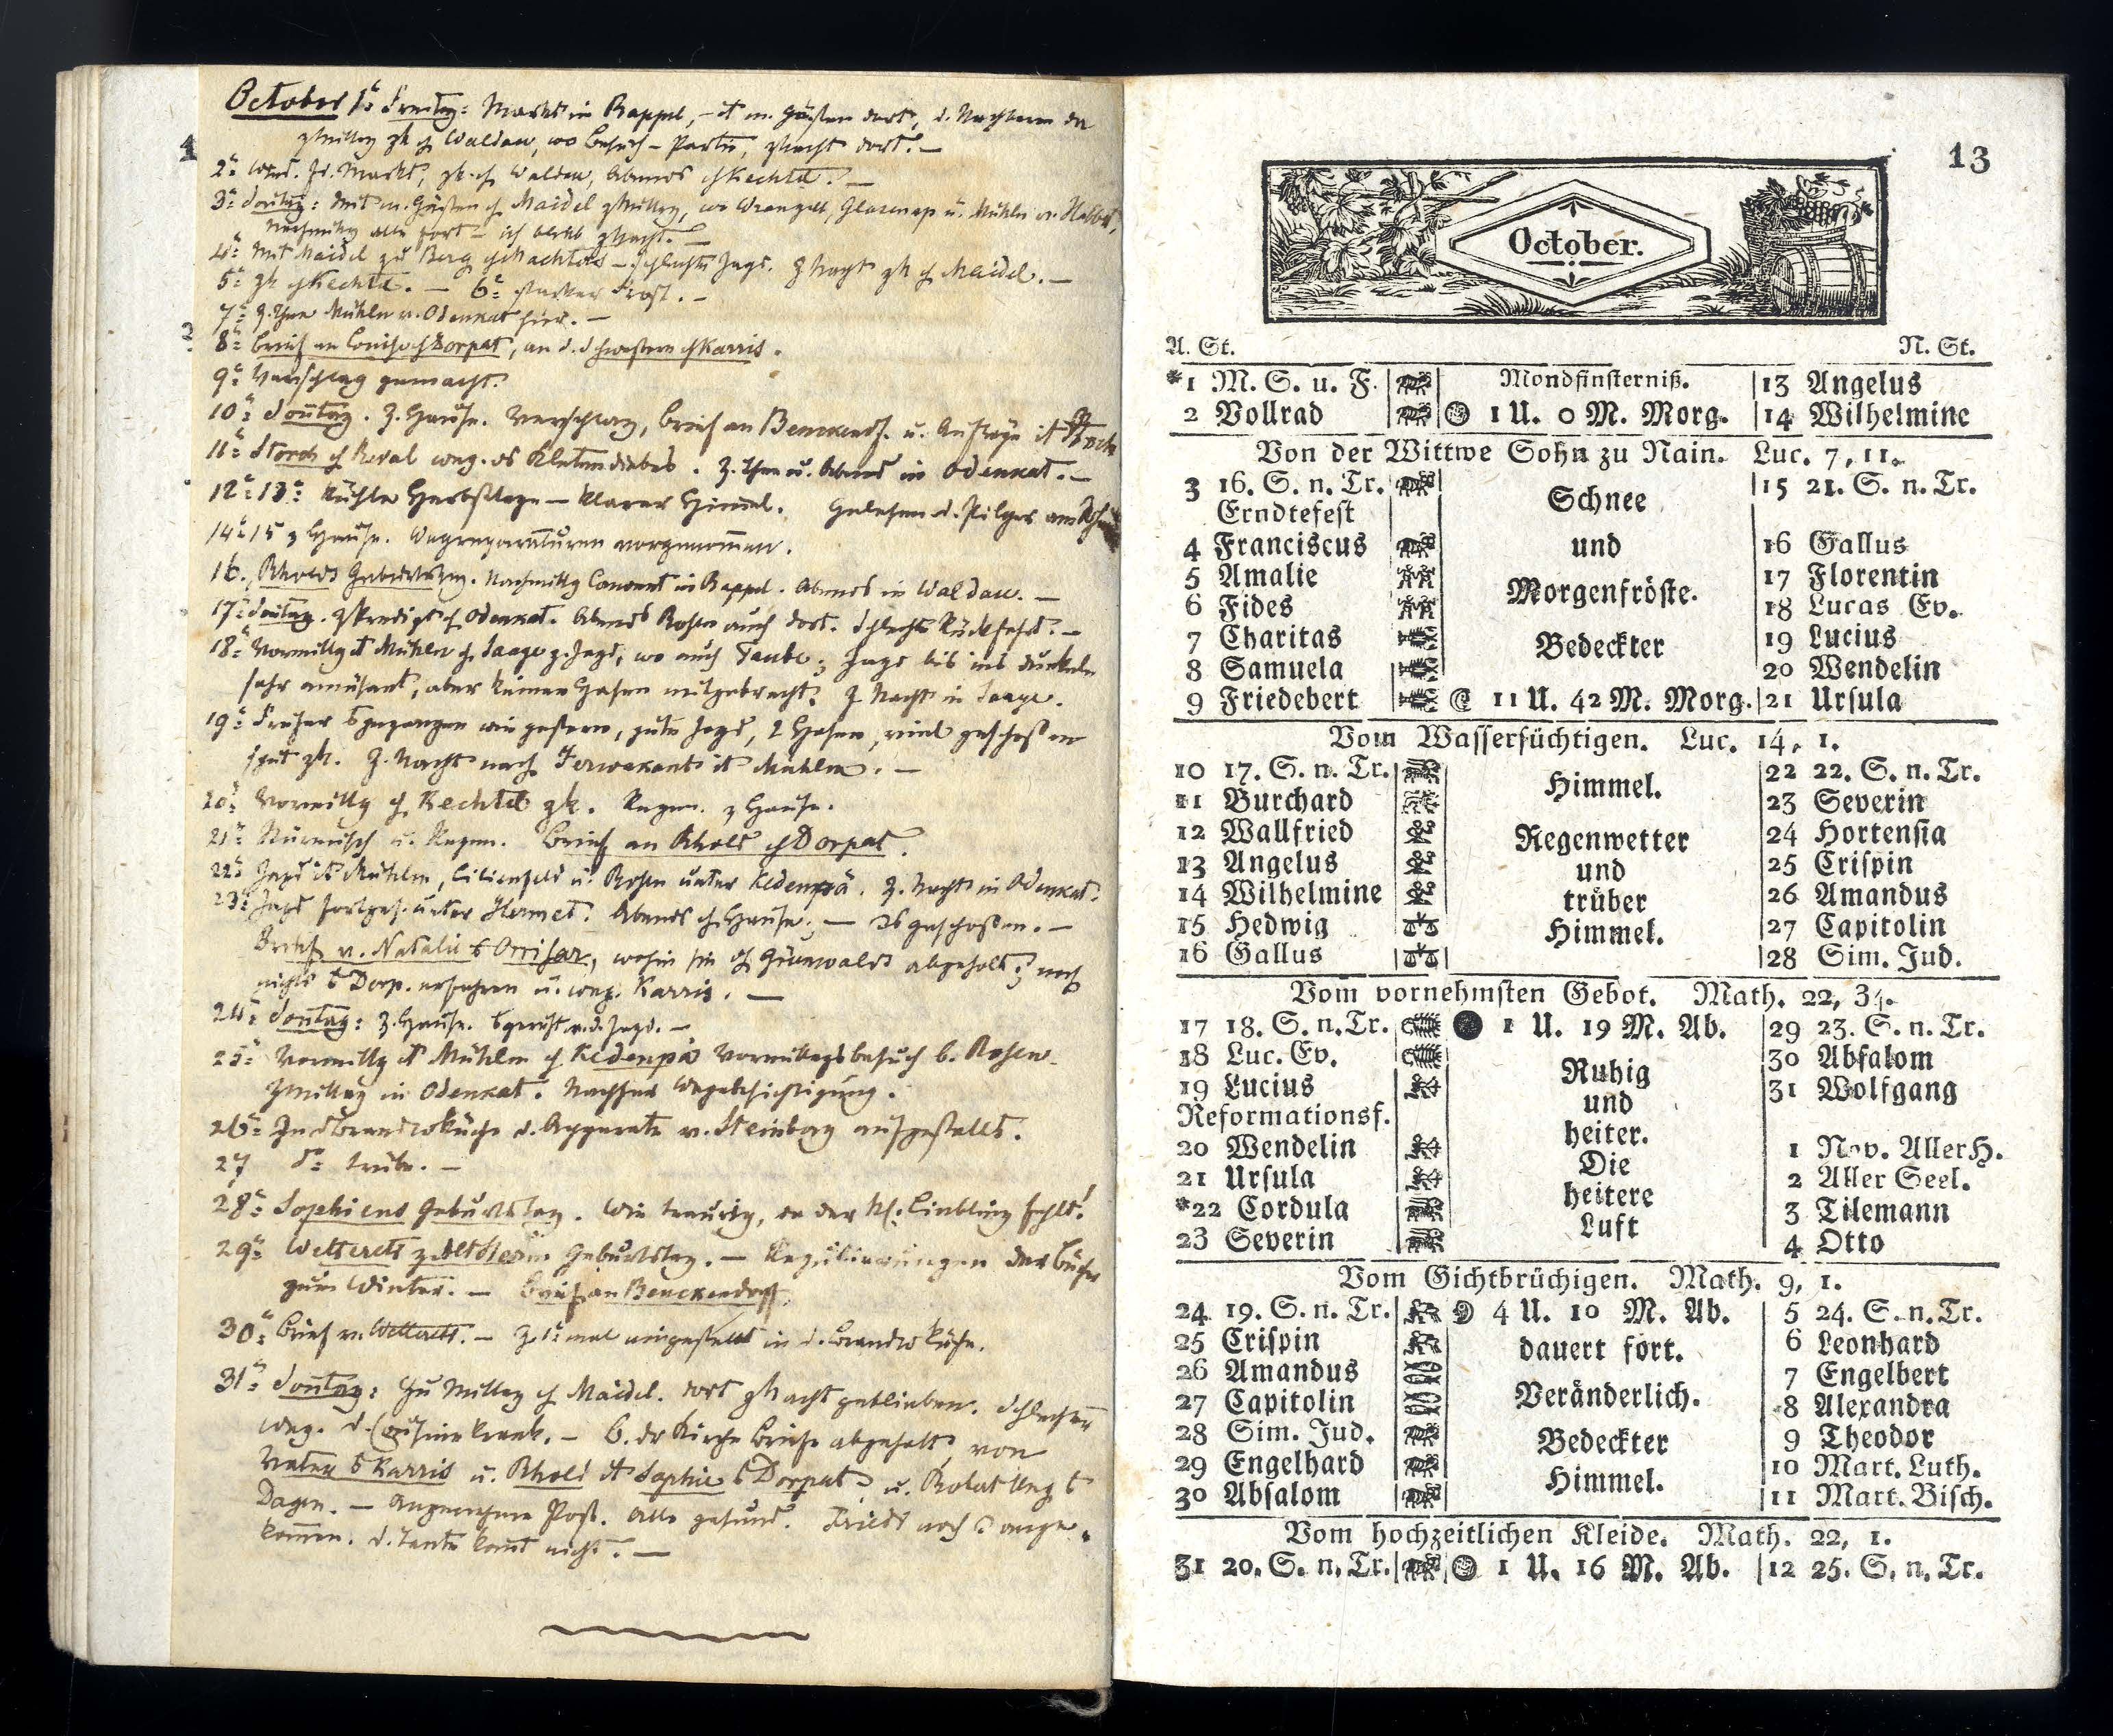 Dörptscher Kalender [1837] (1836) | 13. Main body of text